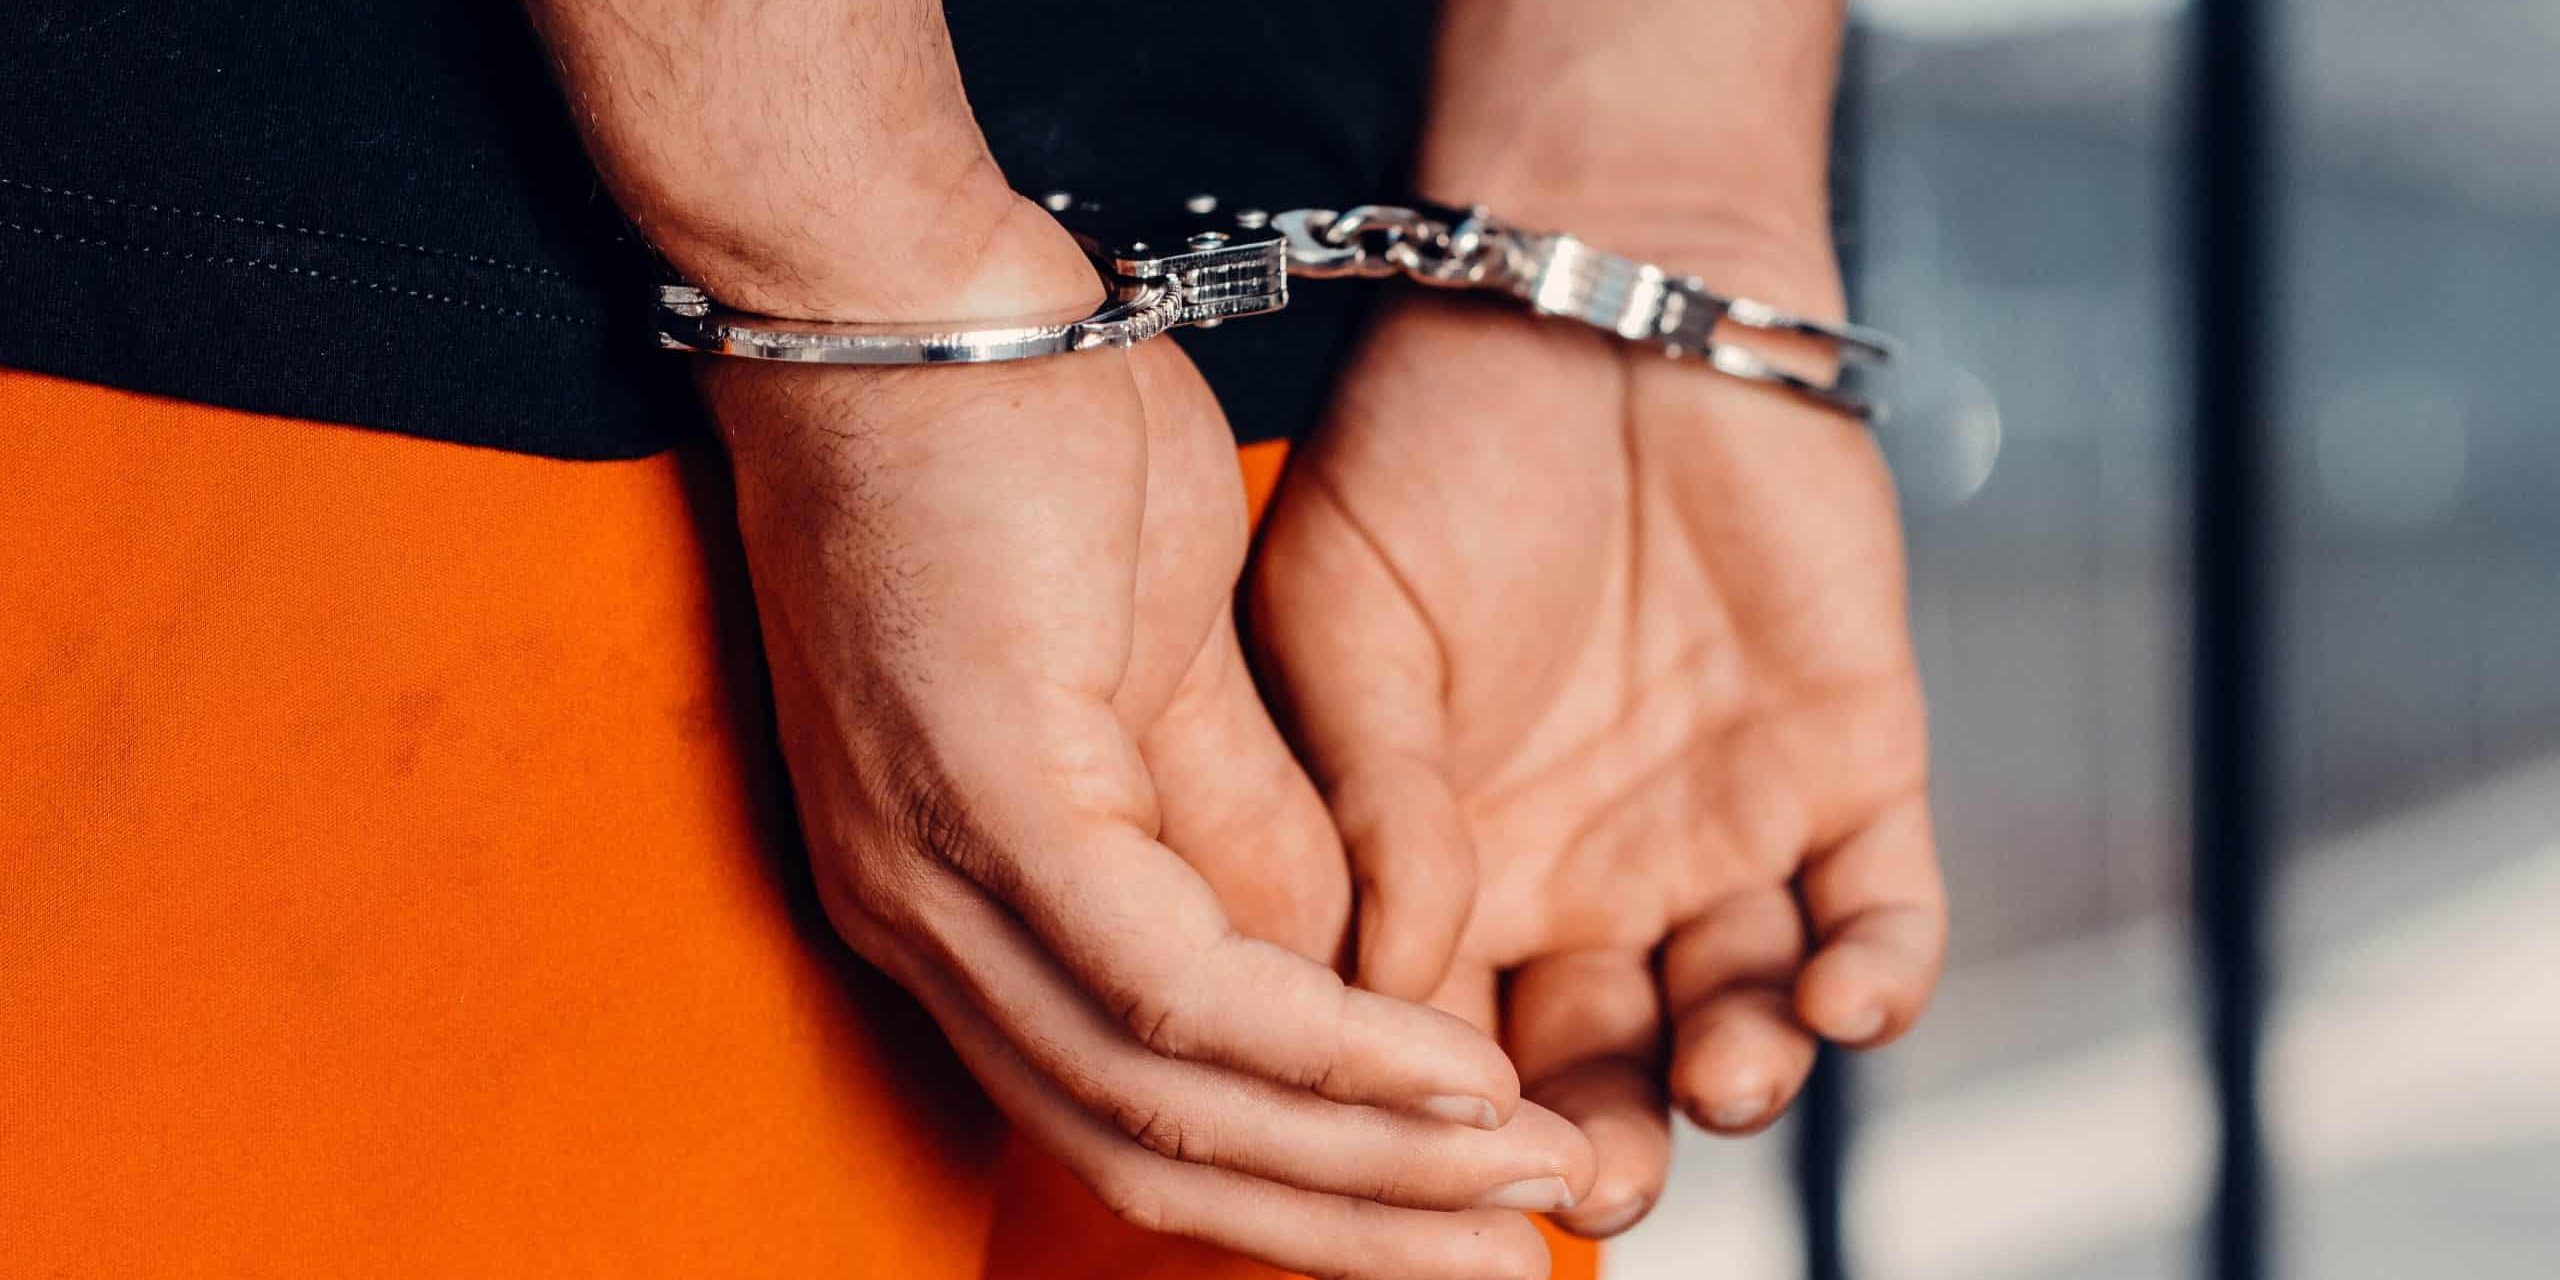 handcuffs arrest